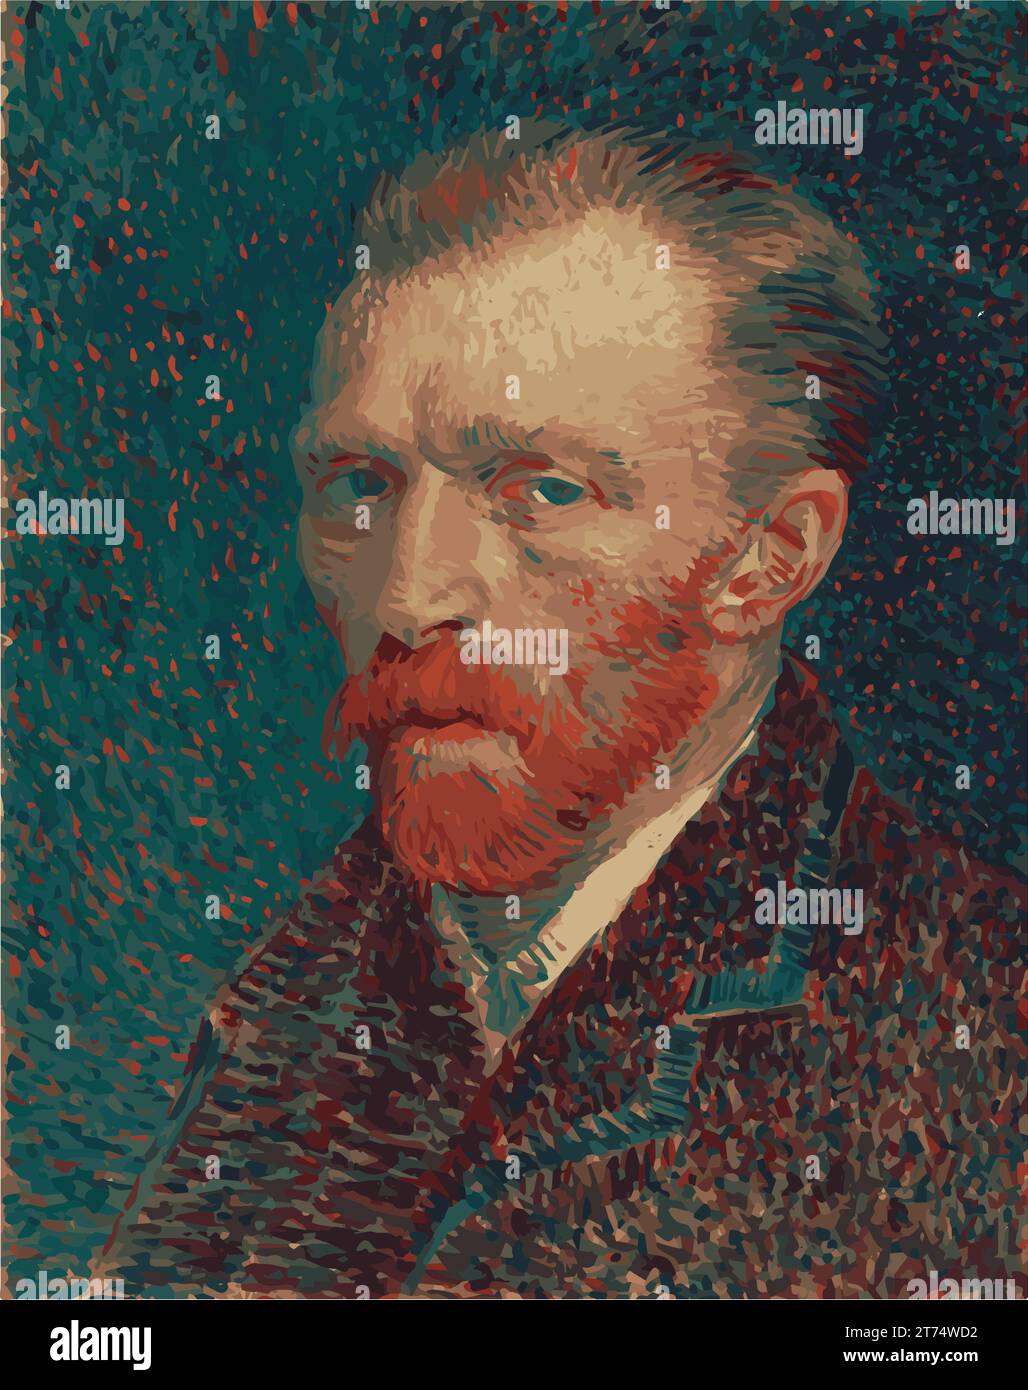 Ritratto di Vincent Van Gogh vettoriale nei colori silhouette. (1853-1890) pittore post-impressionista olandese noto per 'notte stellata'. Salute mentale. Illustrazione Vettoriale